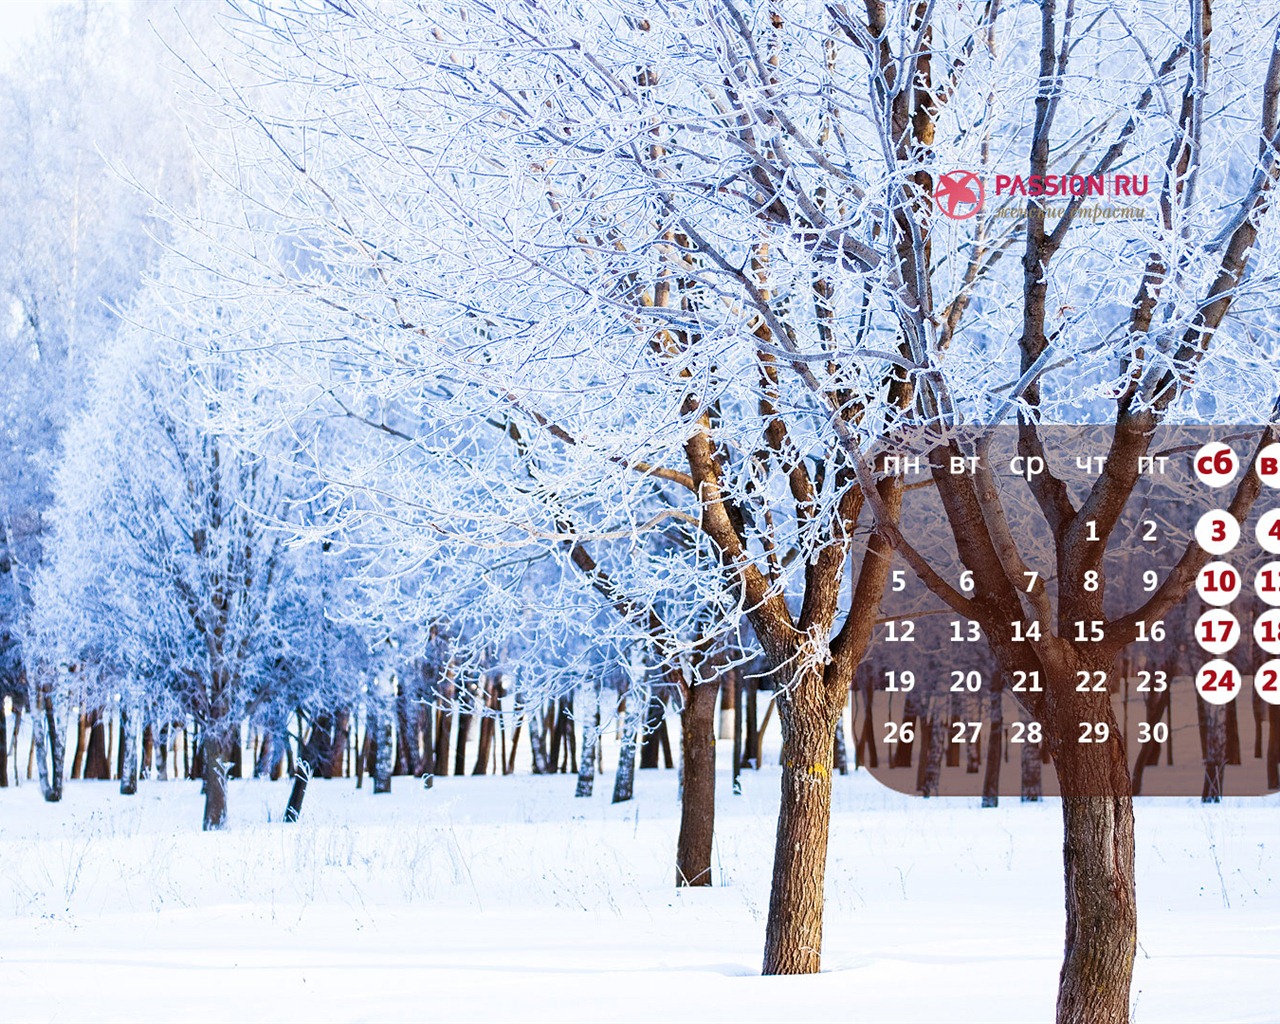 11 2012 Calendar fondo de pantalla (2) #15 - 1280x1024